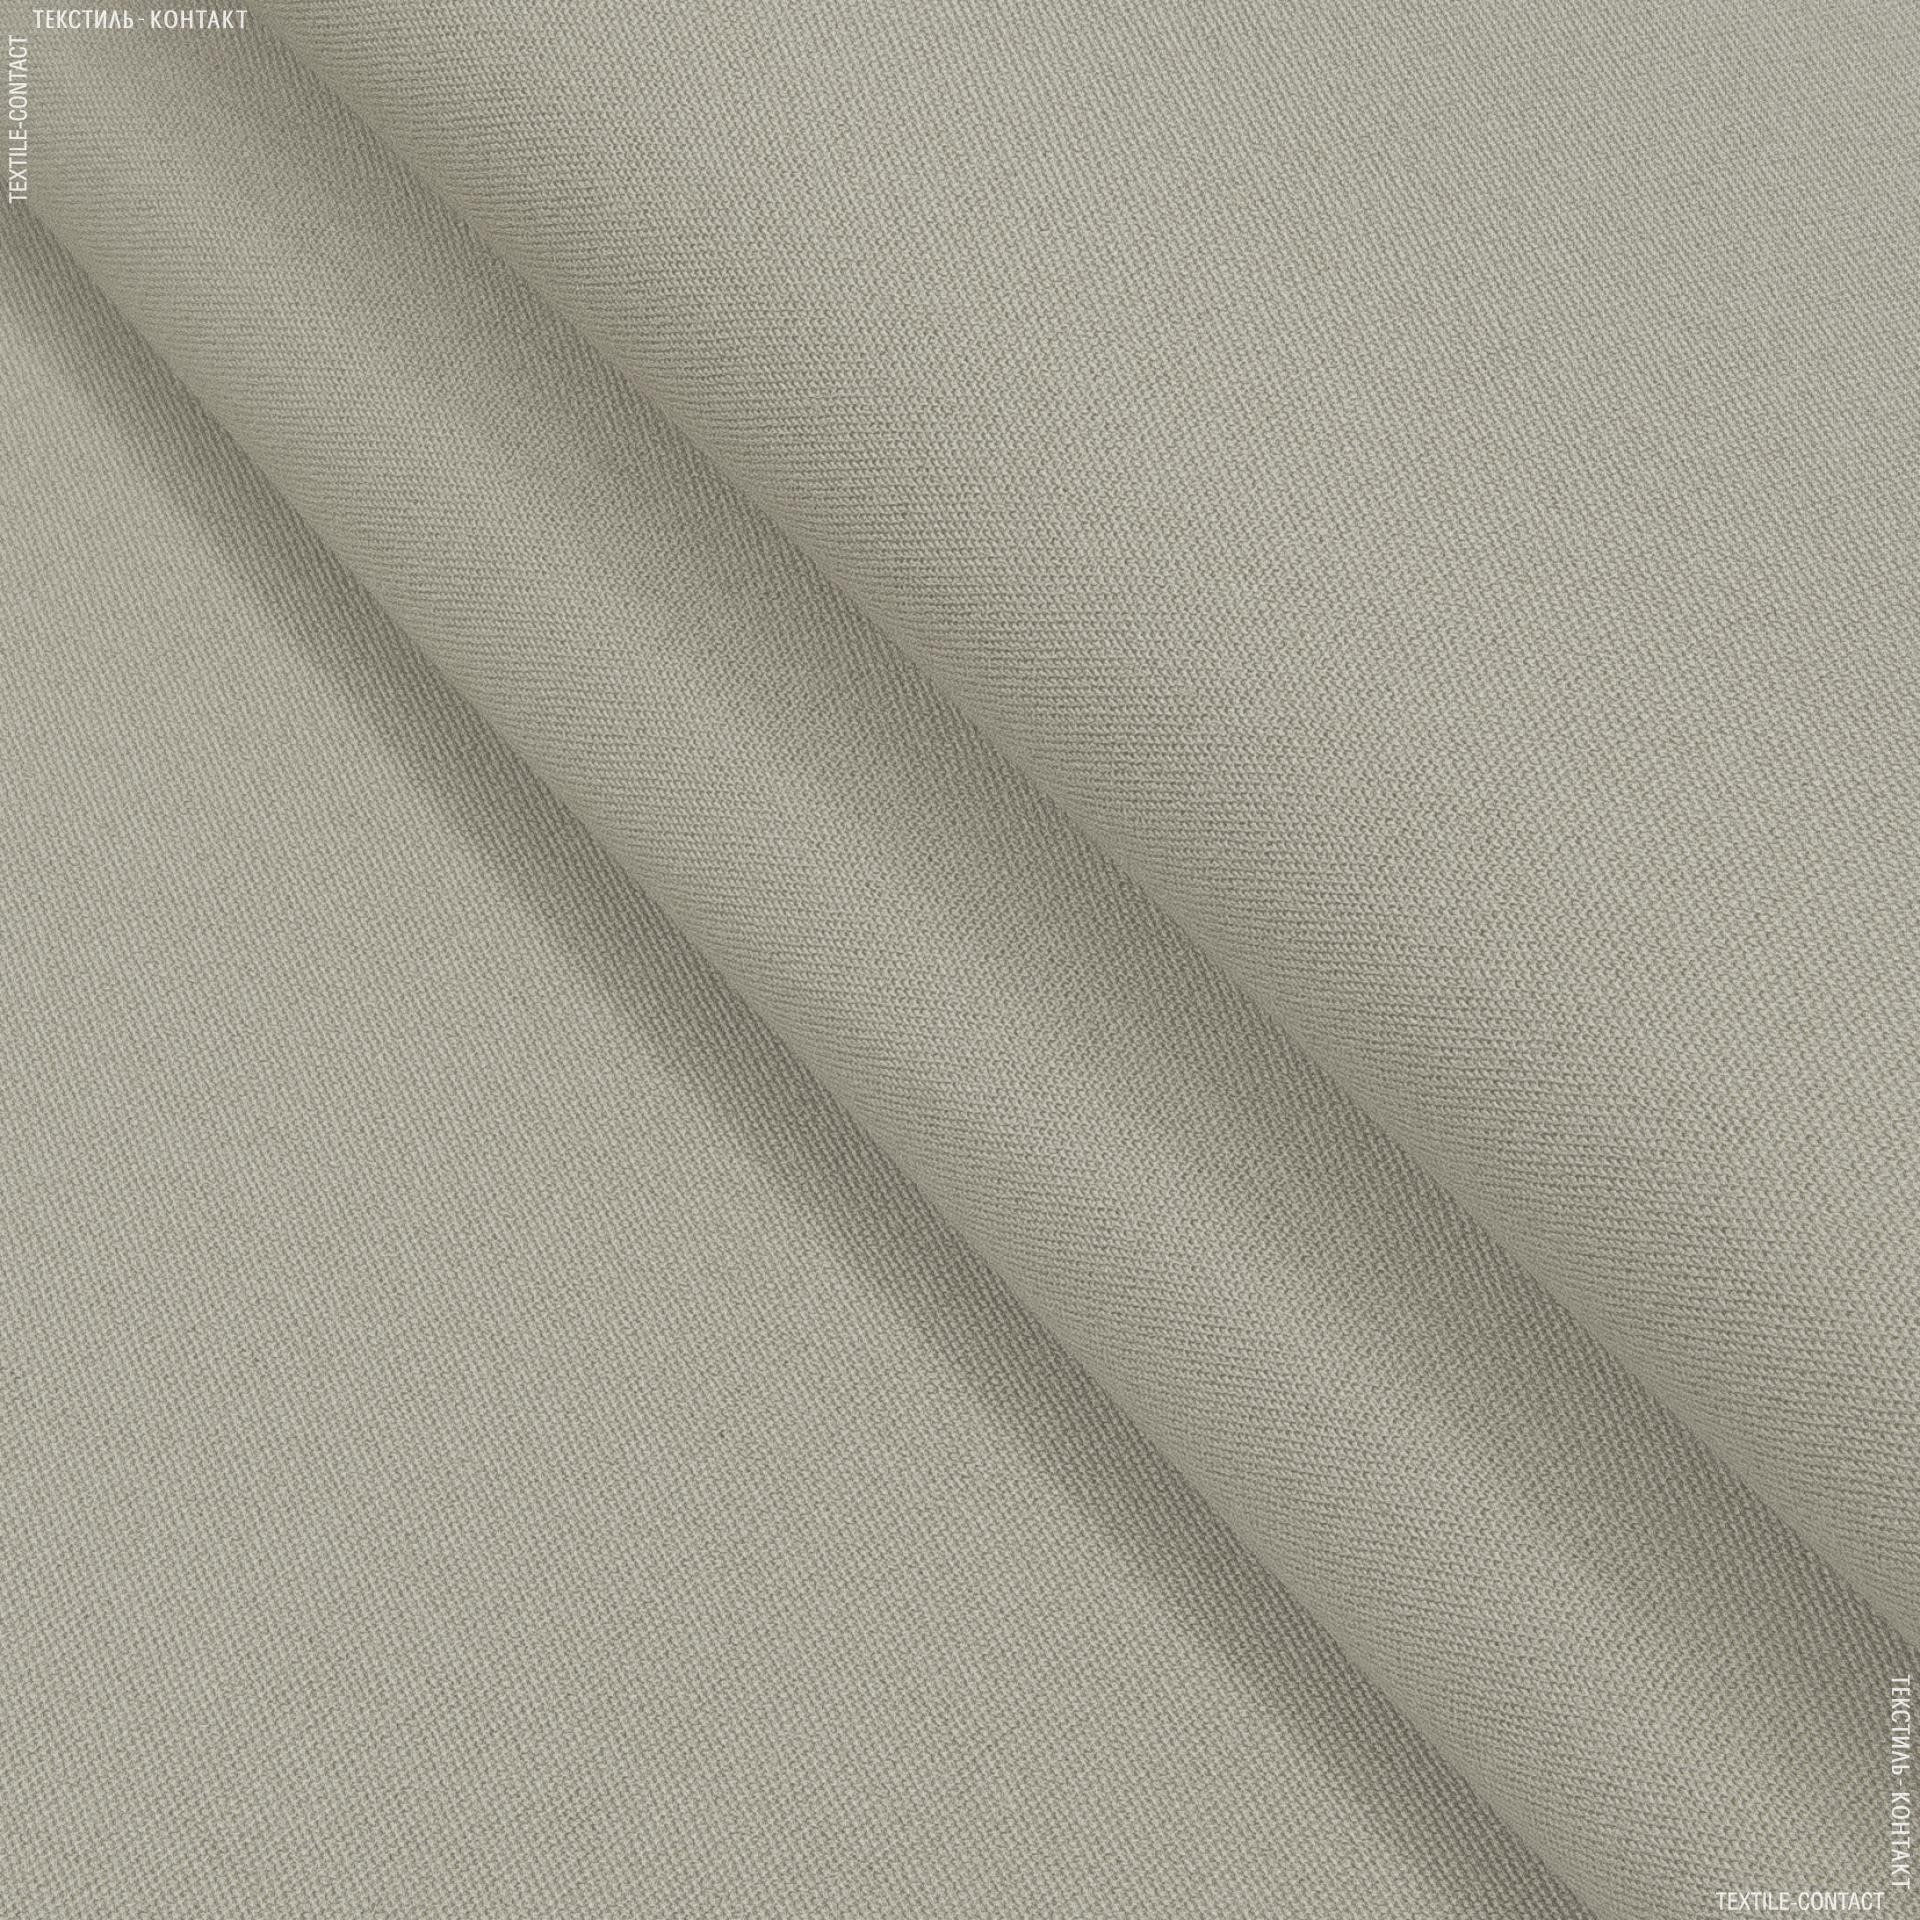 Ткани портьерные ткани - Дралон  св.бежево-песочный FRBS1